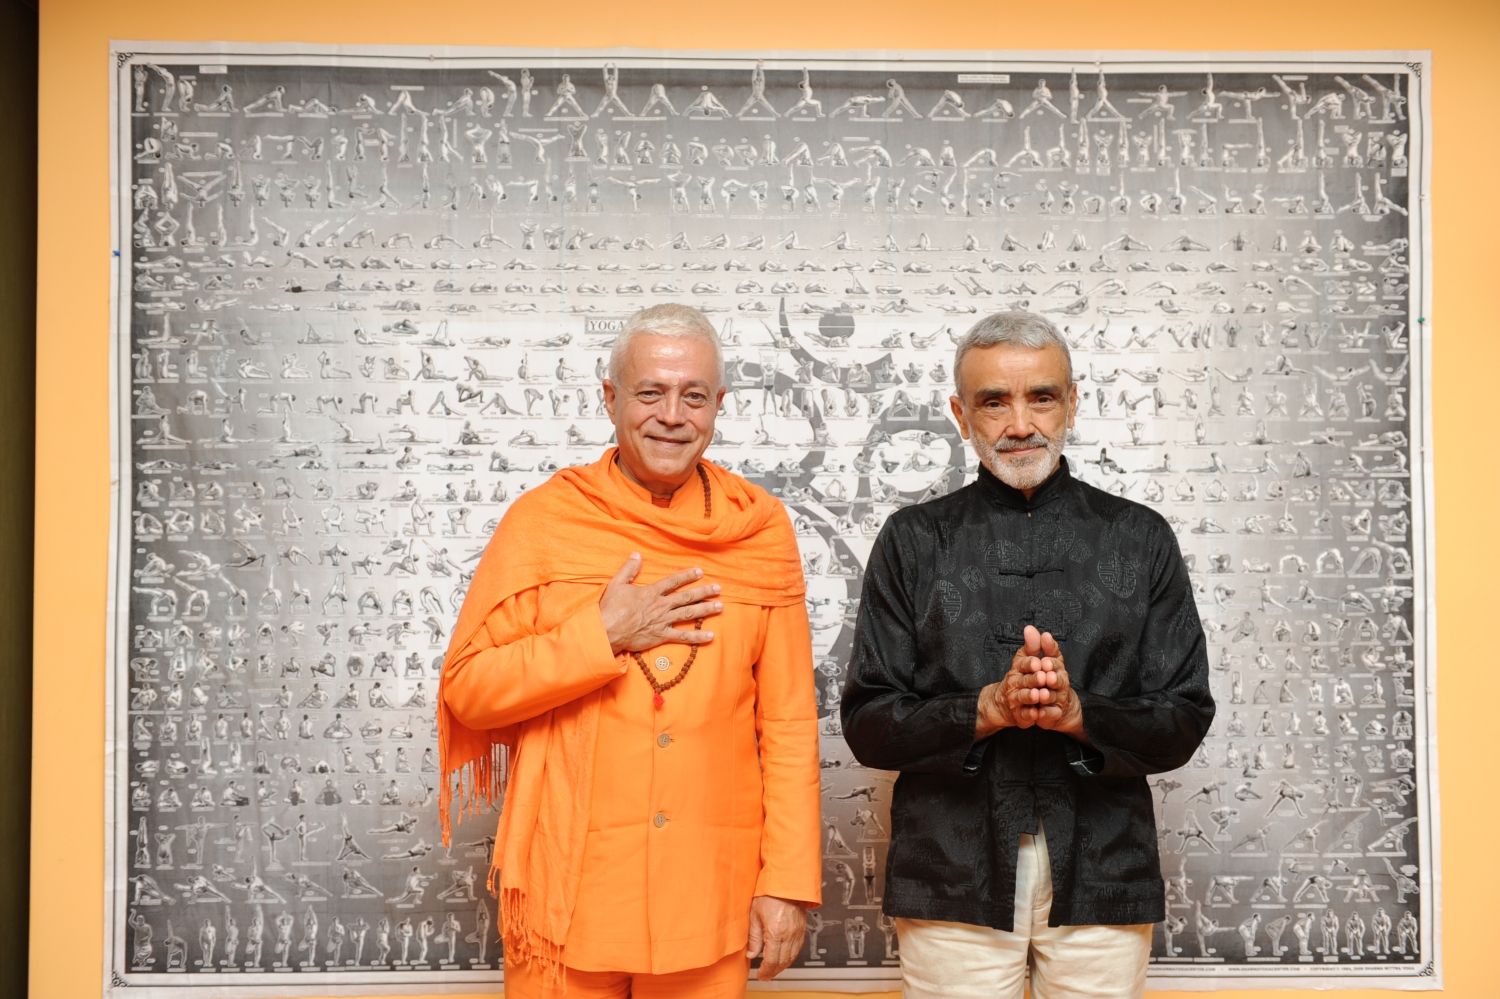 Meeting of H.H. Jagat Guru Amrta Sūryānanda Mahā Rāja with Shrí Dharma Mittra - Dharma Mittra Áshrama, New York - 2012, September